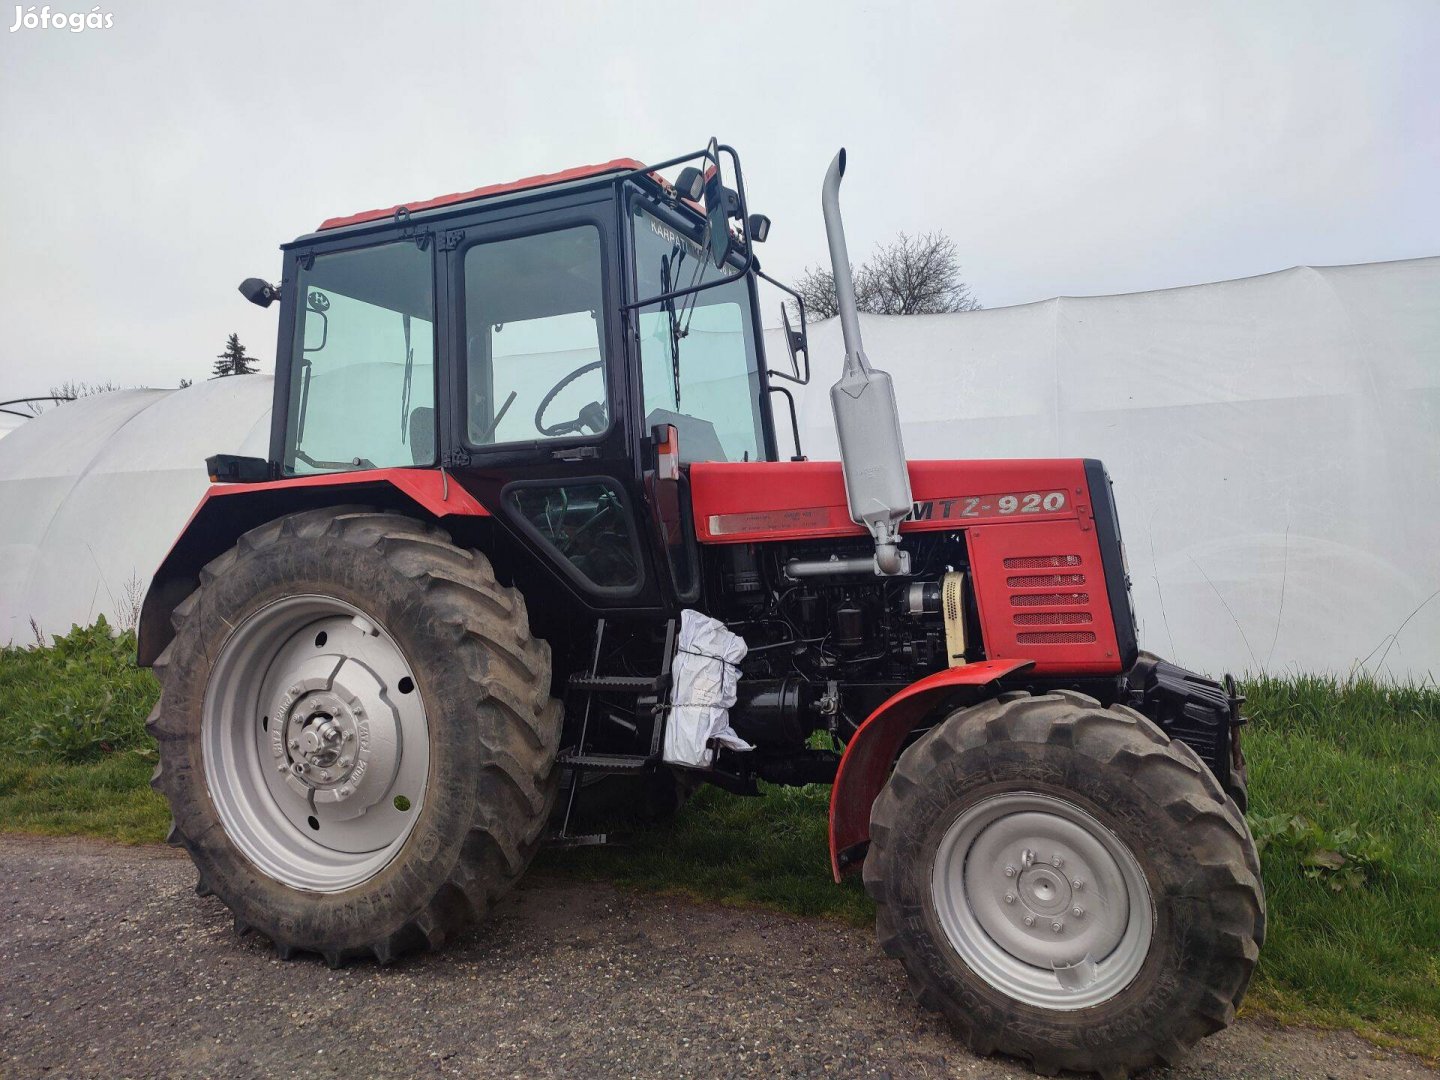 Eladó MTZ 920-as traktor